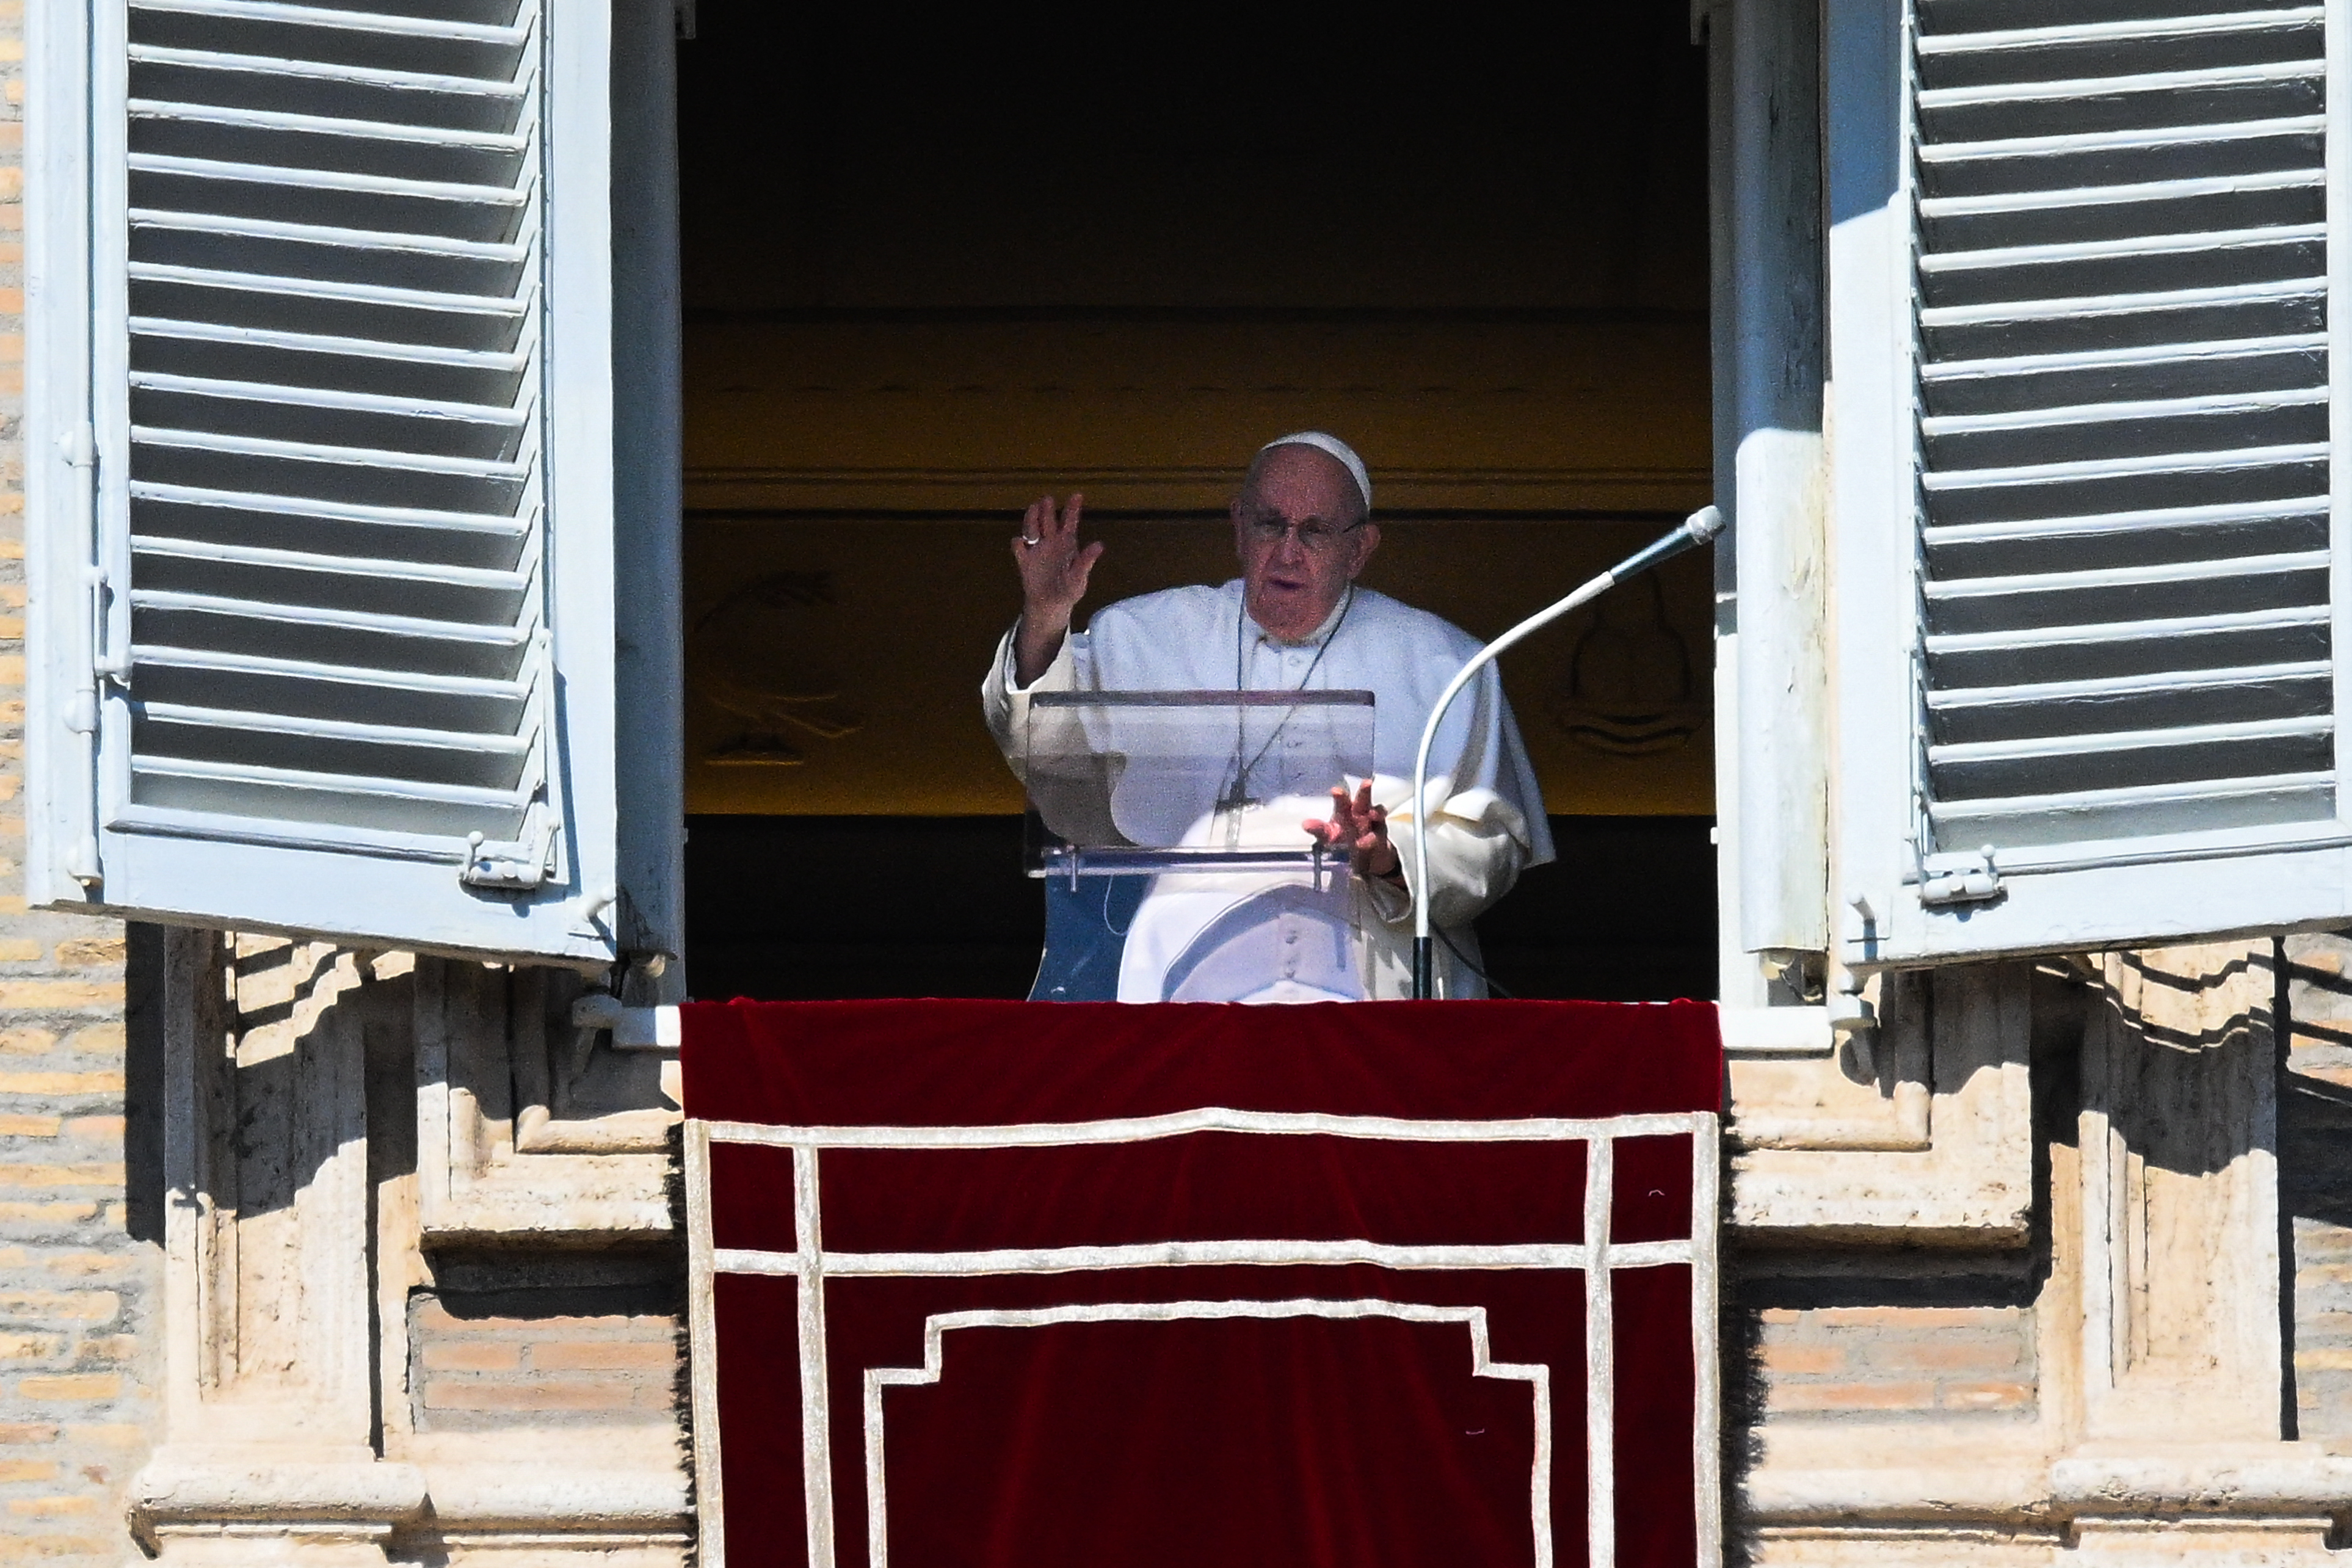 Un fuerte resfriado impide al papa Francisco leer sus discursos en las audiencias